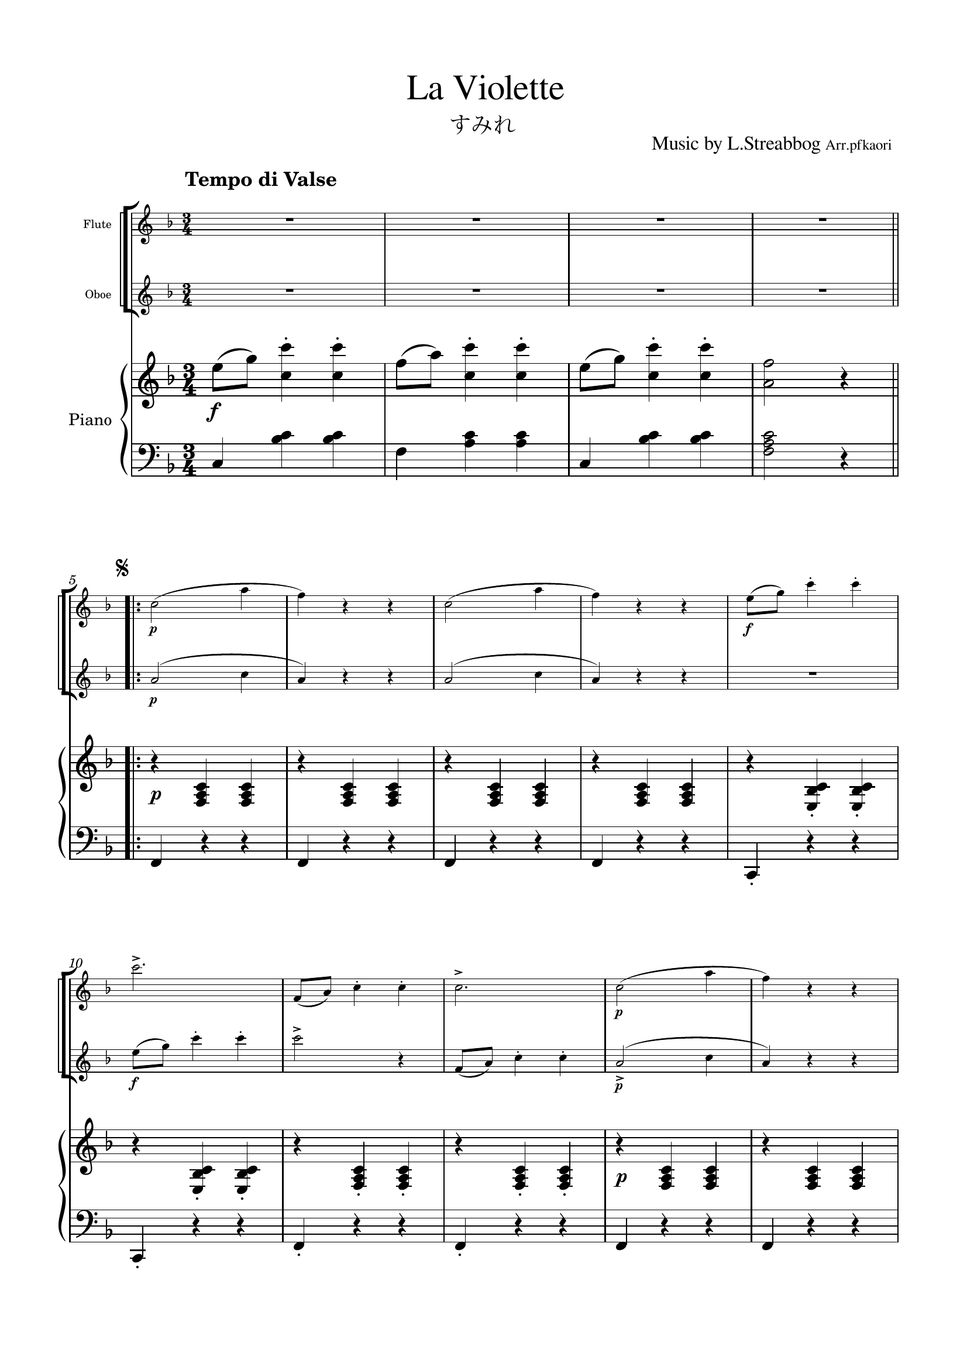 Strea bogg - La Violette (Piano trio / Flute & Oboe) by pfkaori